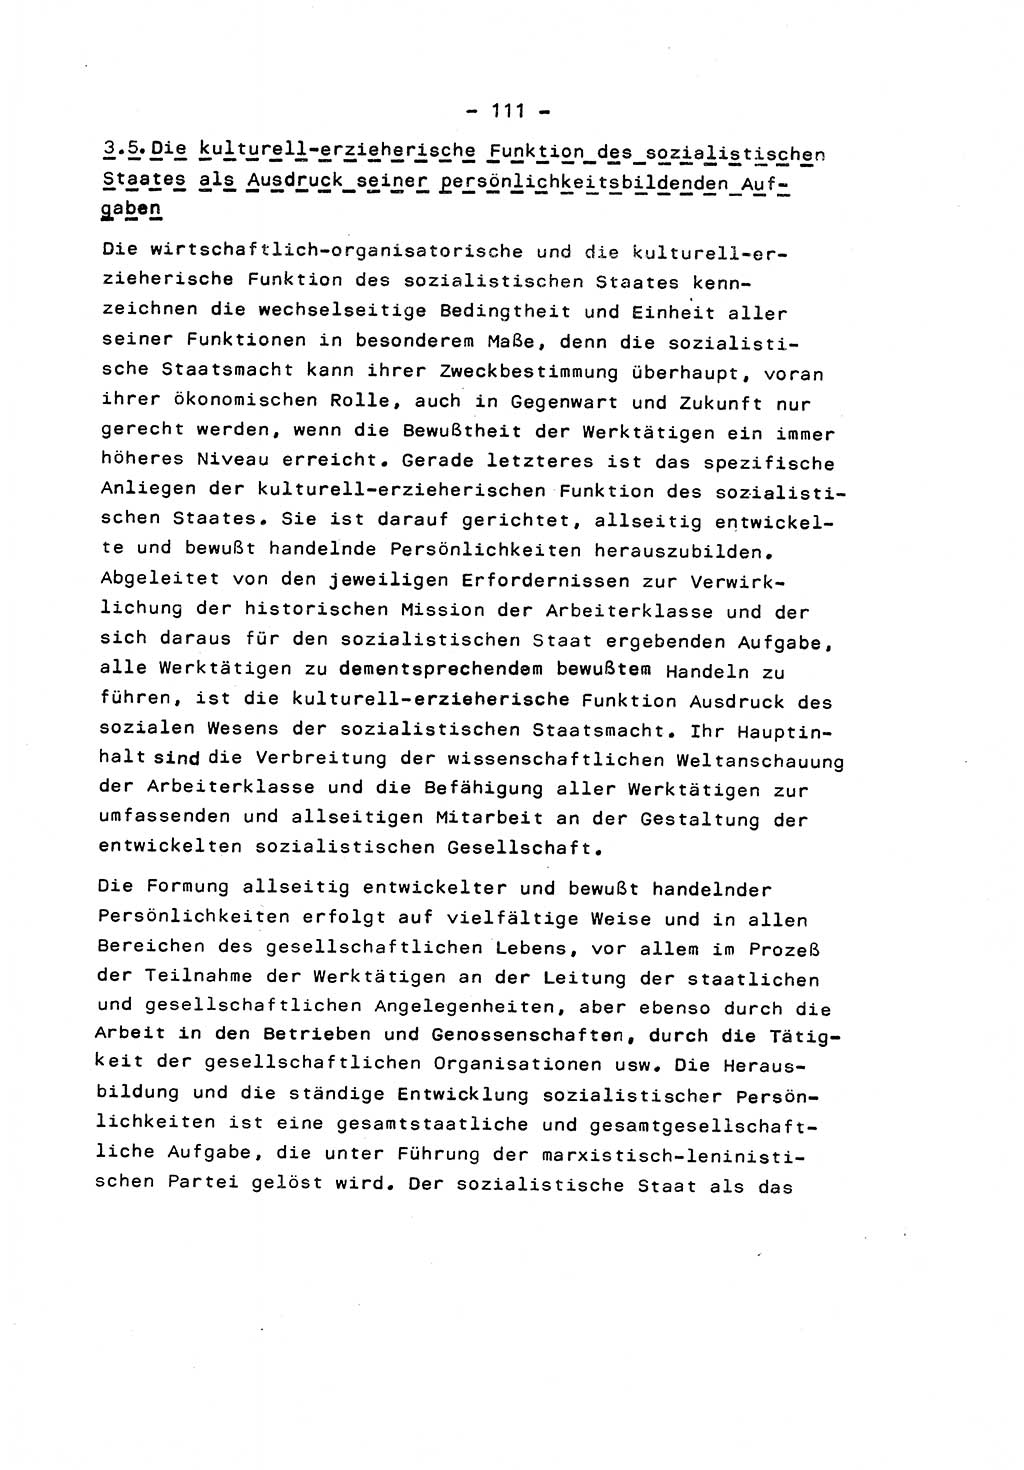 Marxistisch-leninistische Staats- und Rechtstheorie [Deutsche Demokratische Republik (DDR)] 1975, Seite 111 (ML St.-R.-Th. DDR 1975, S. 111)